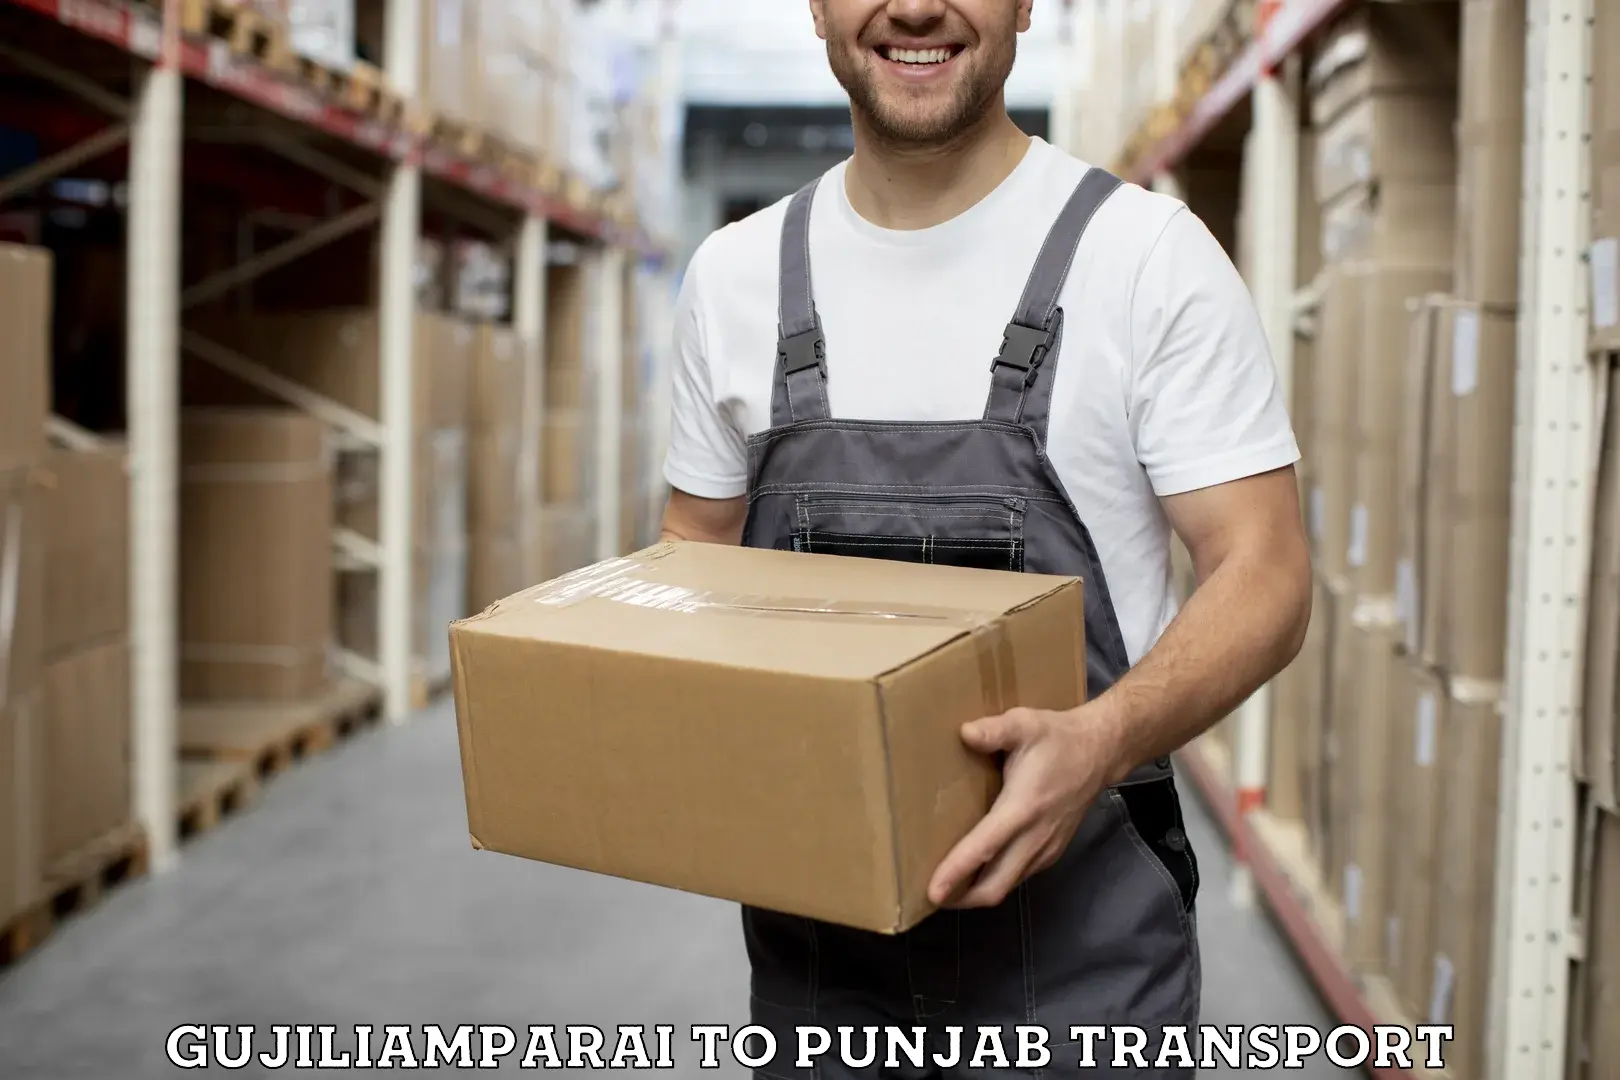 Delivery service Gujiliamparai to Malout